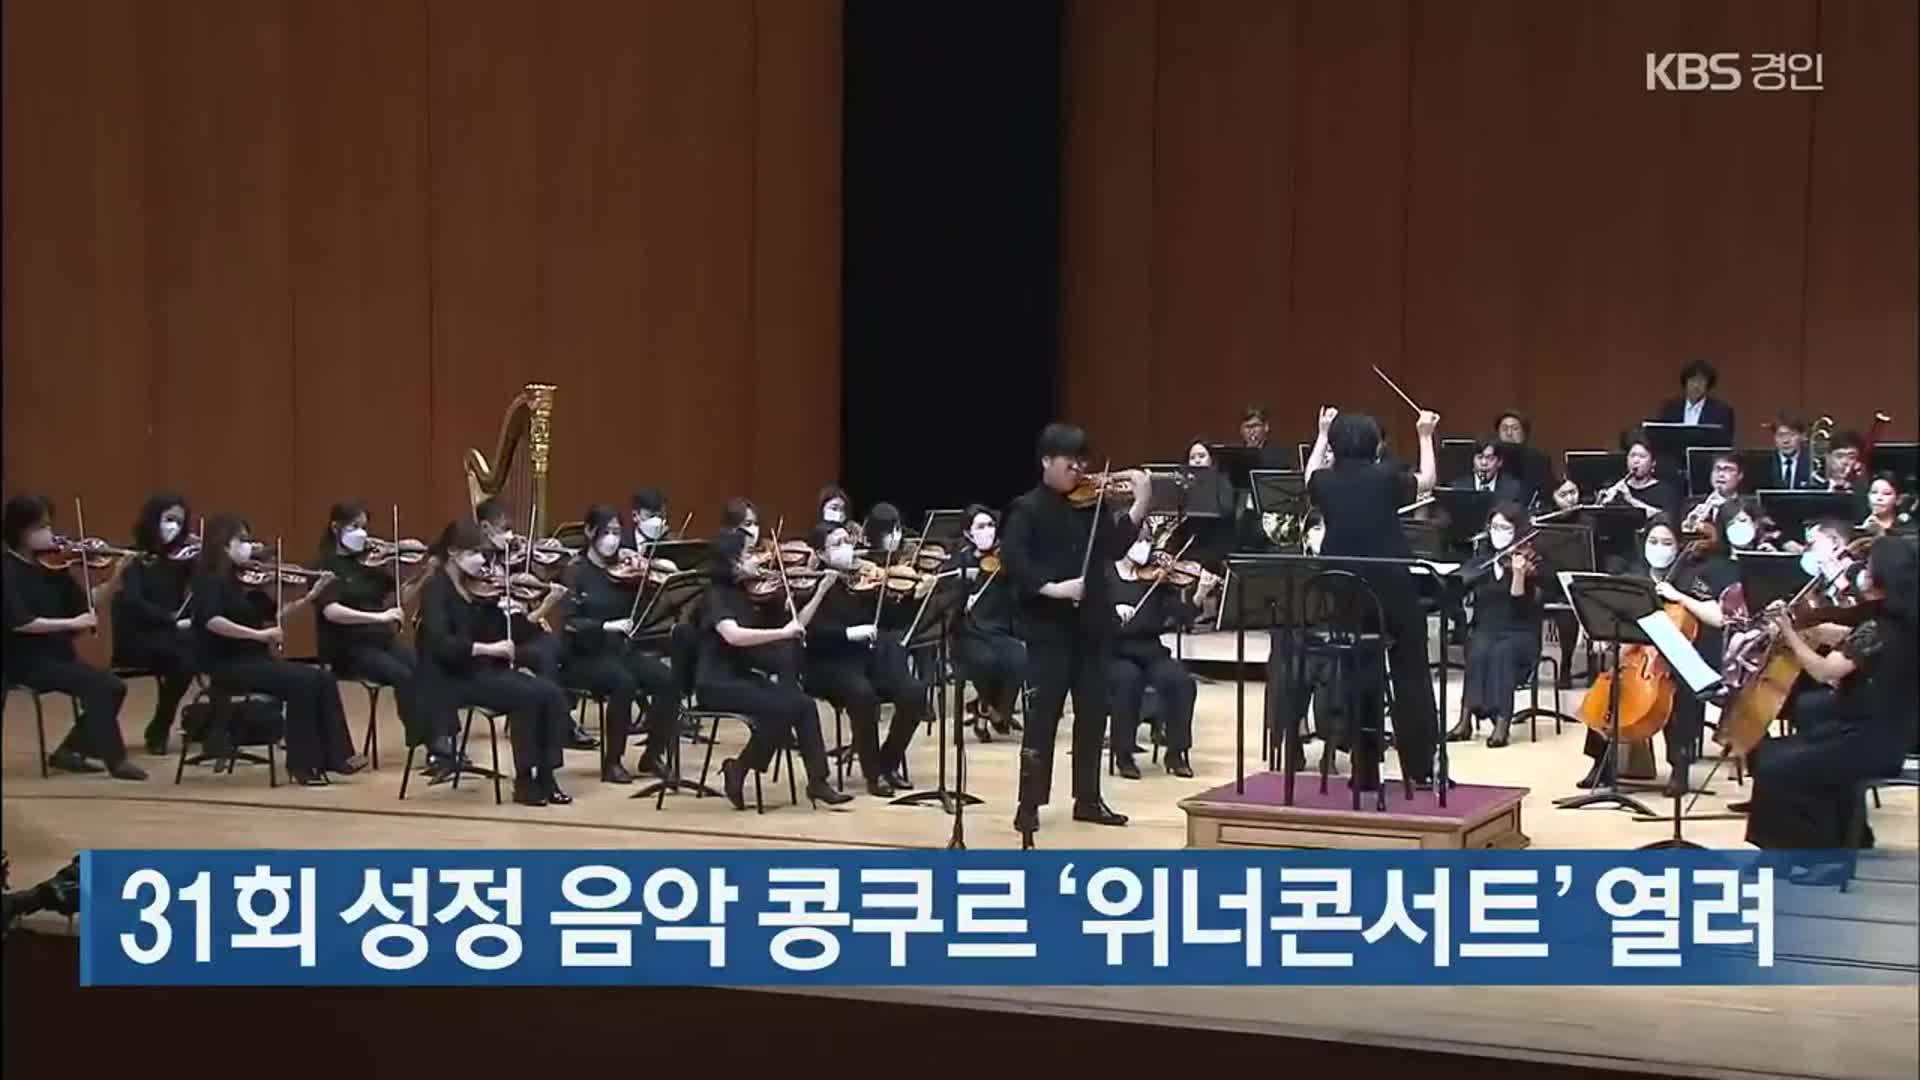 31회 성정 음악 콩쿠르 ‘위너콘서트’ 열려